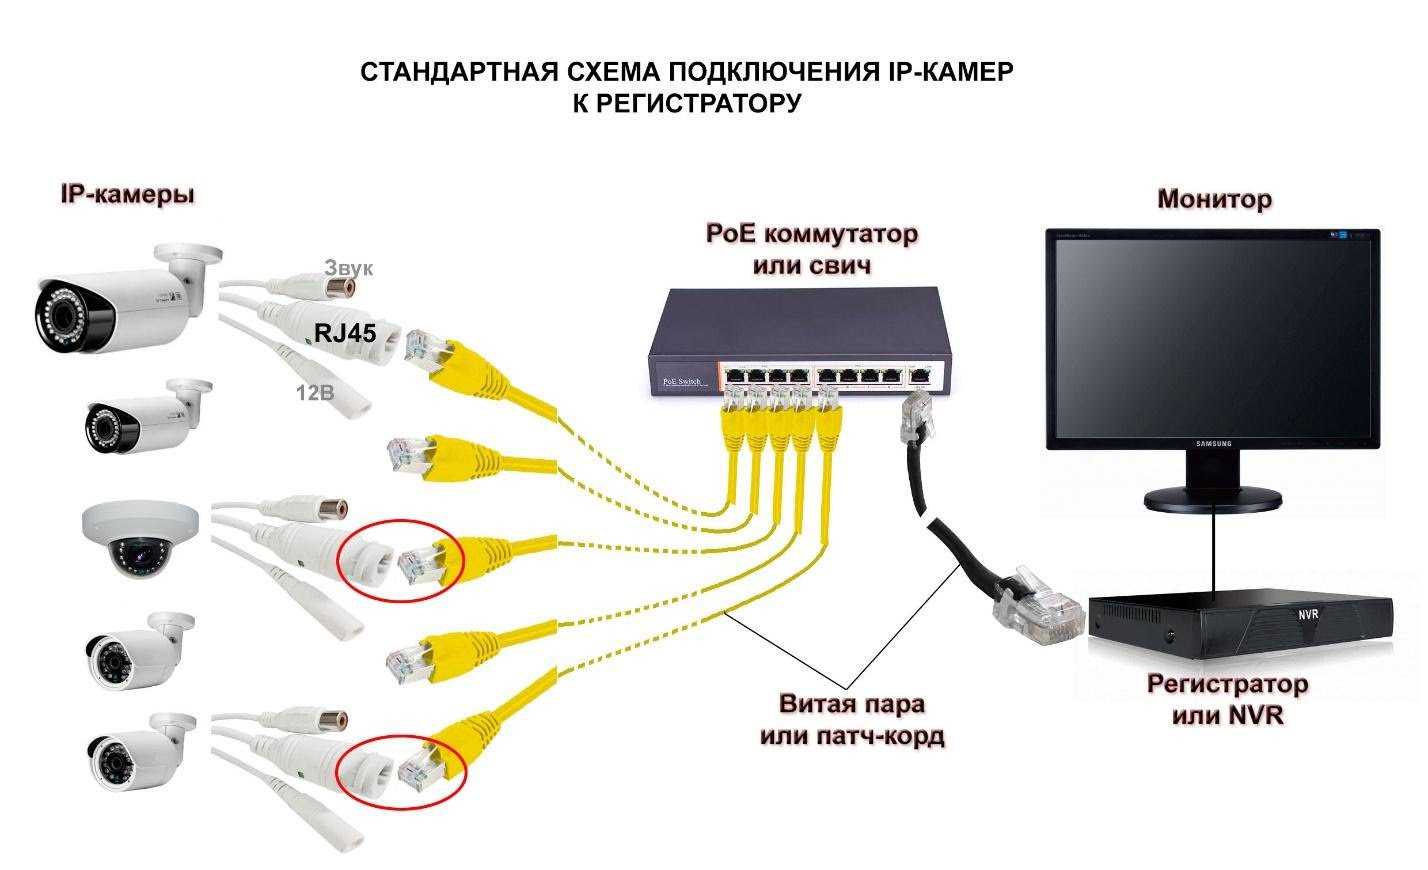 Программа для видеорегистратора: dvr, видео, пк, комп не видит через usb, просмотра, кабель питания, файлов, с gps, работы